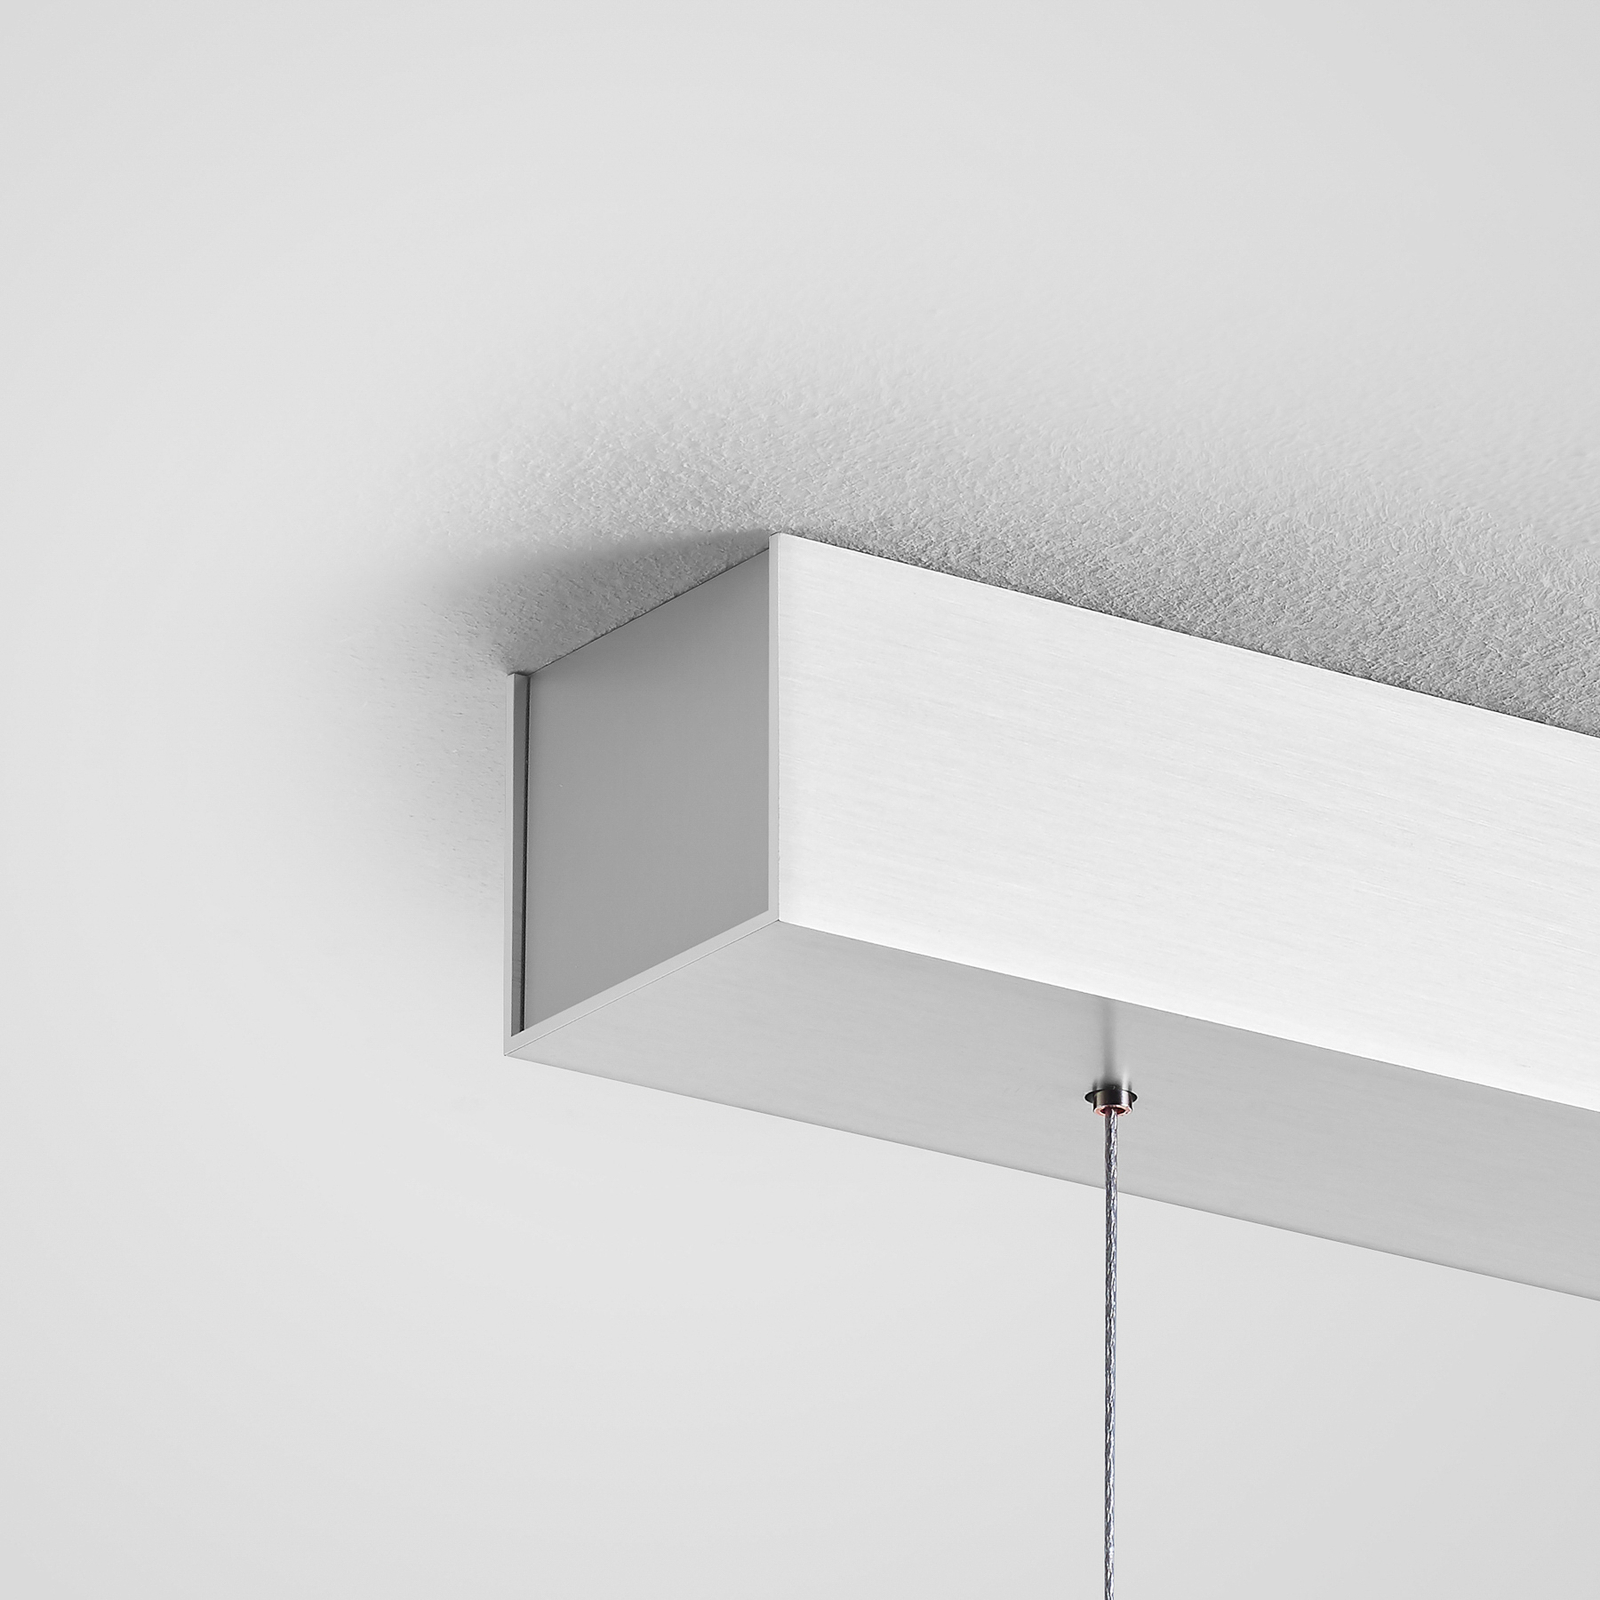 Quitani Keijo LED-es függesztett lámpa, nikkel/tölgy, 123 cm